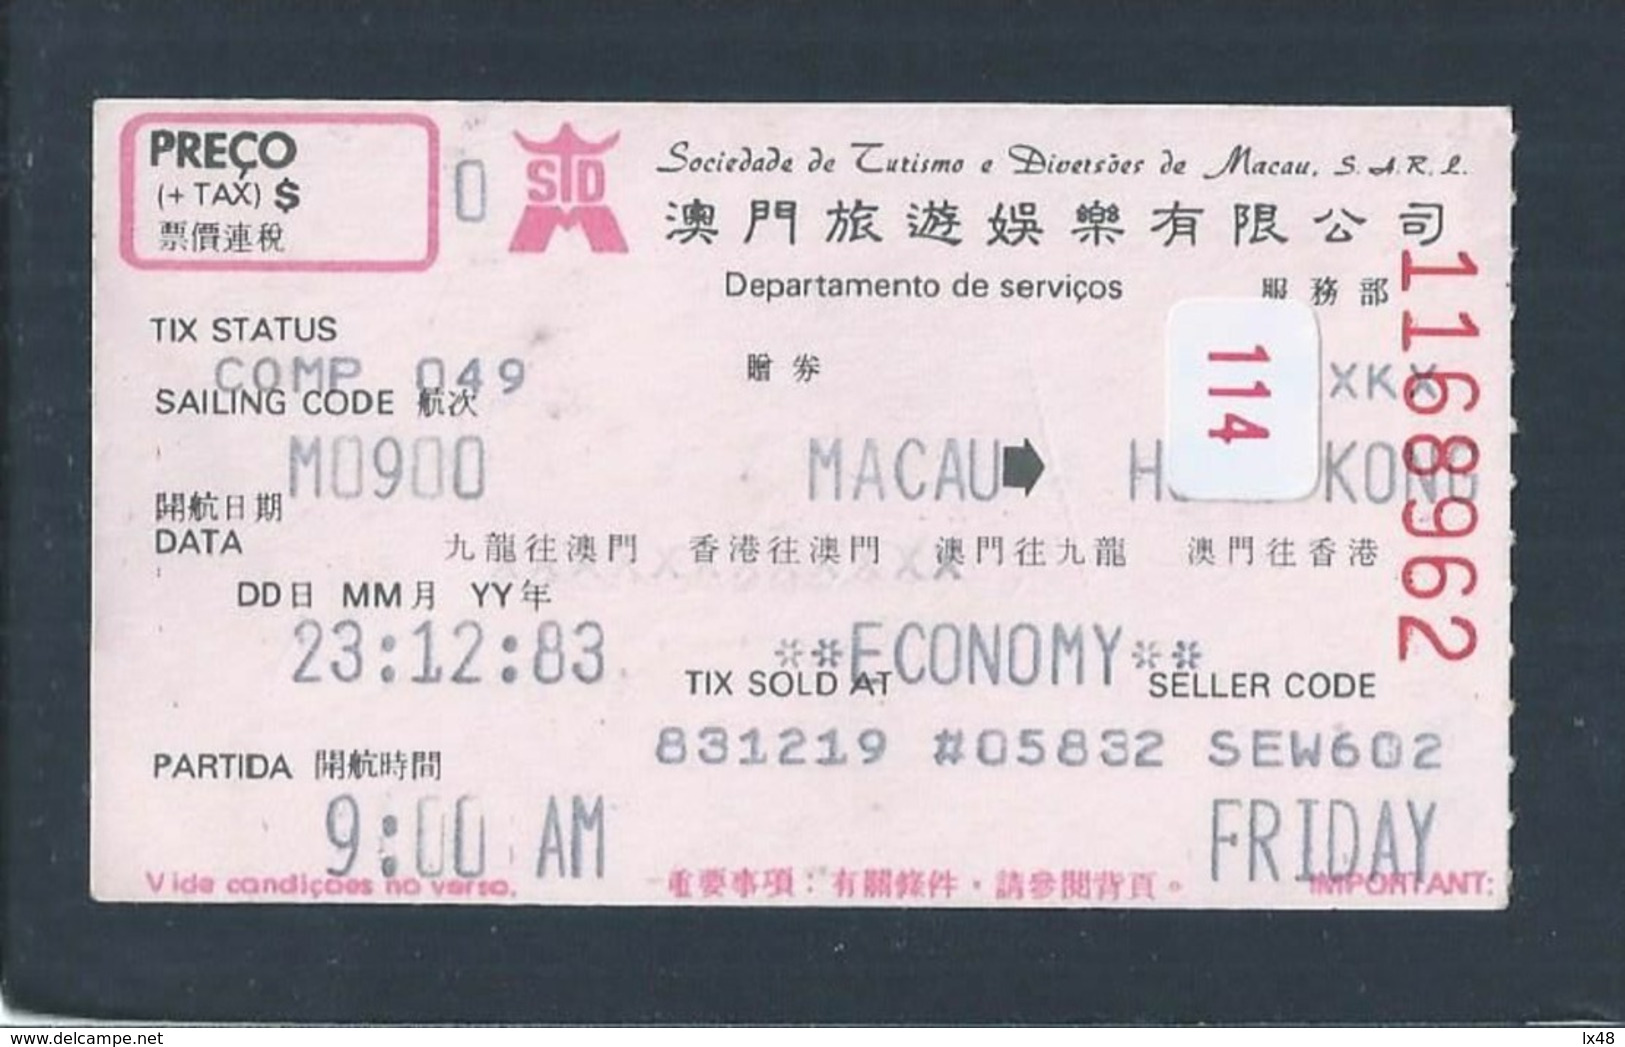 Macao Transport Ticket - Hong Kong. Macau Amusement Company. Macao Fahrschein - Hong Kong. Billets De Transport. Macau - Mondo